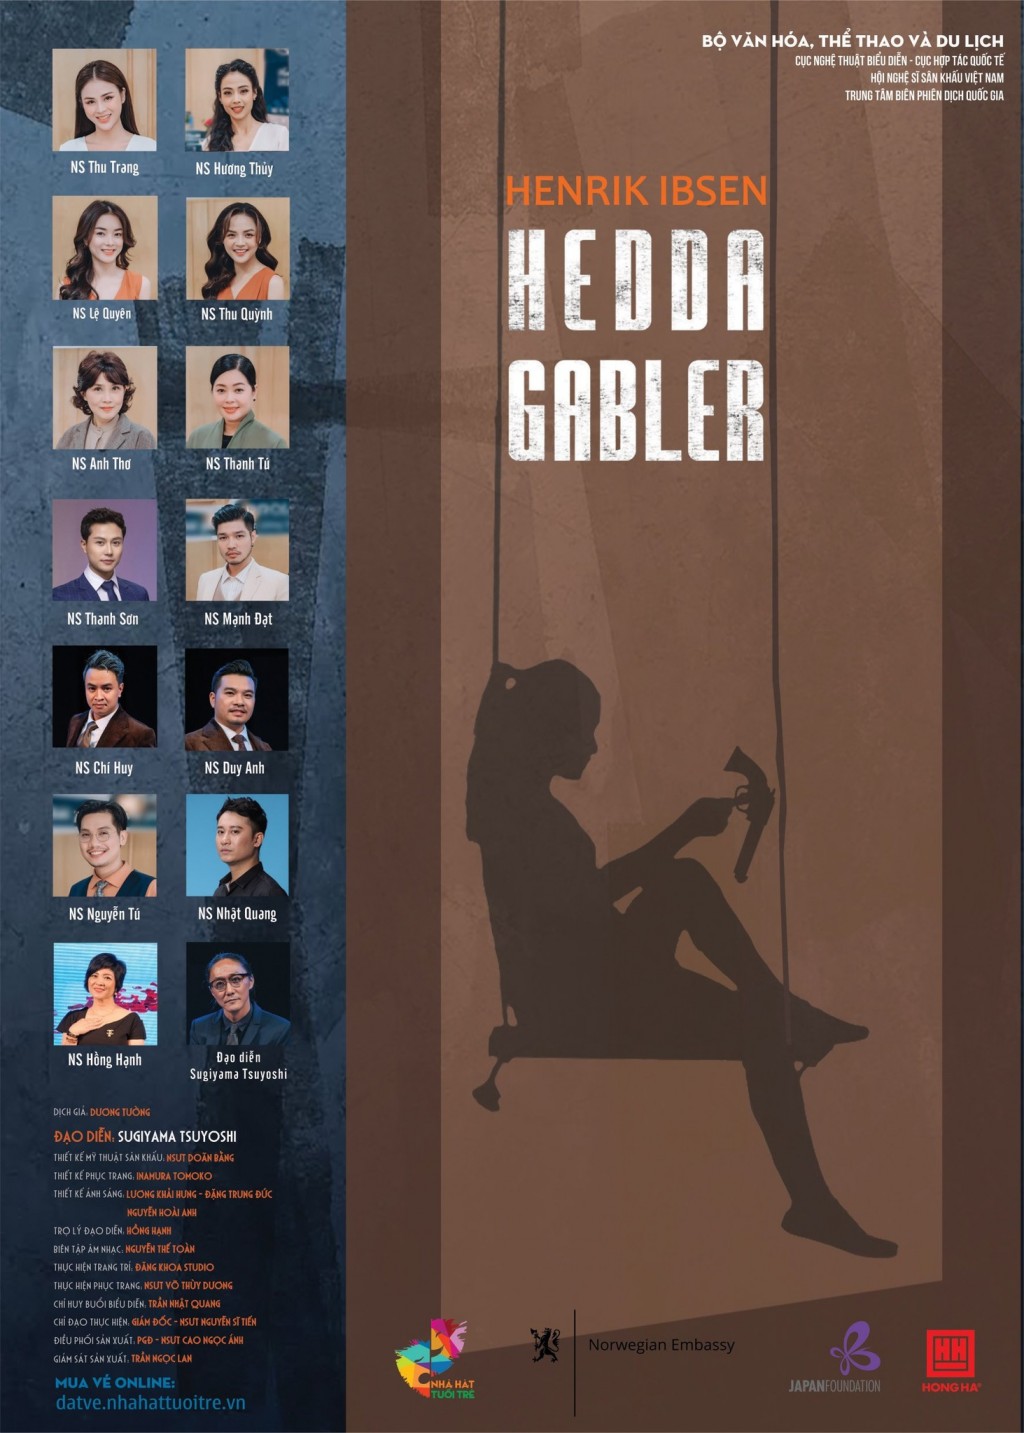 Nhà hát Tuổi trẻ tiếp tục giải mã kiệt tác của Henrik Ibsen với vở kịch “Hedda Gabler”